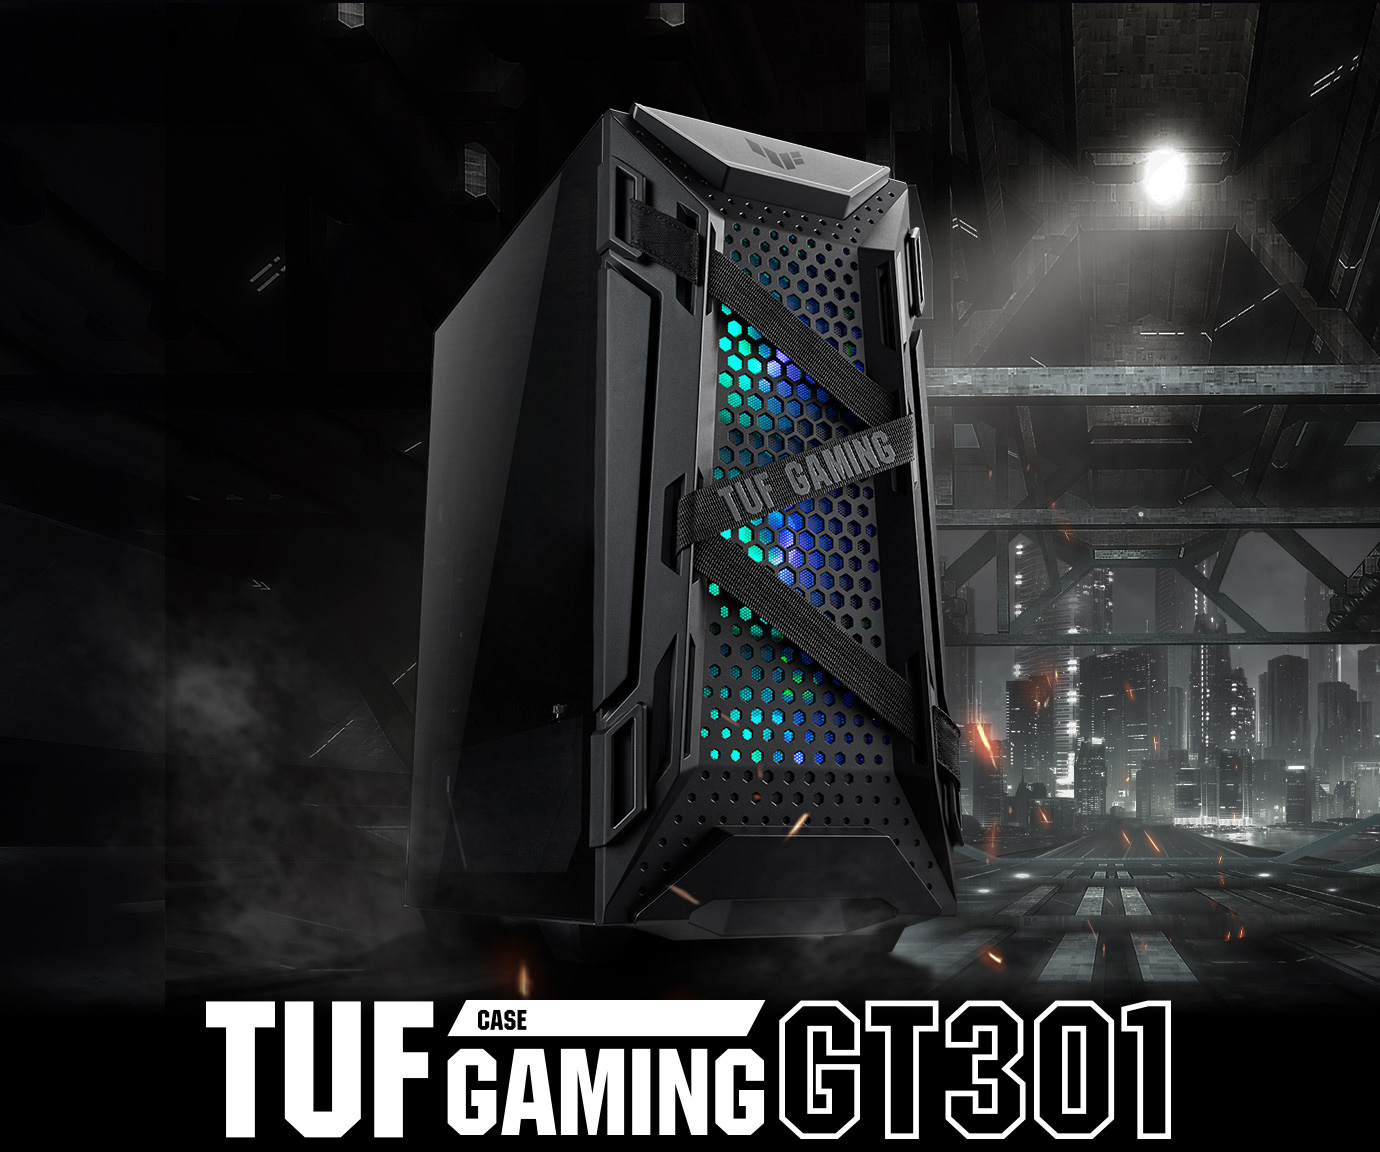 華碩 TUF Gaming GT301 電競機殼產品照片。